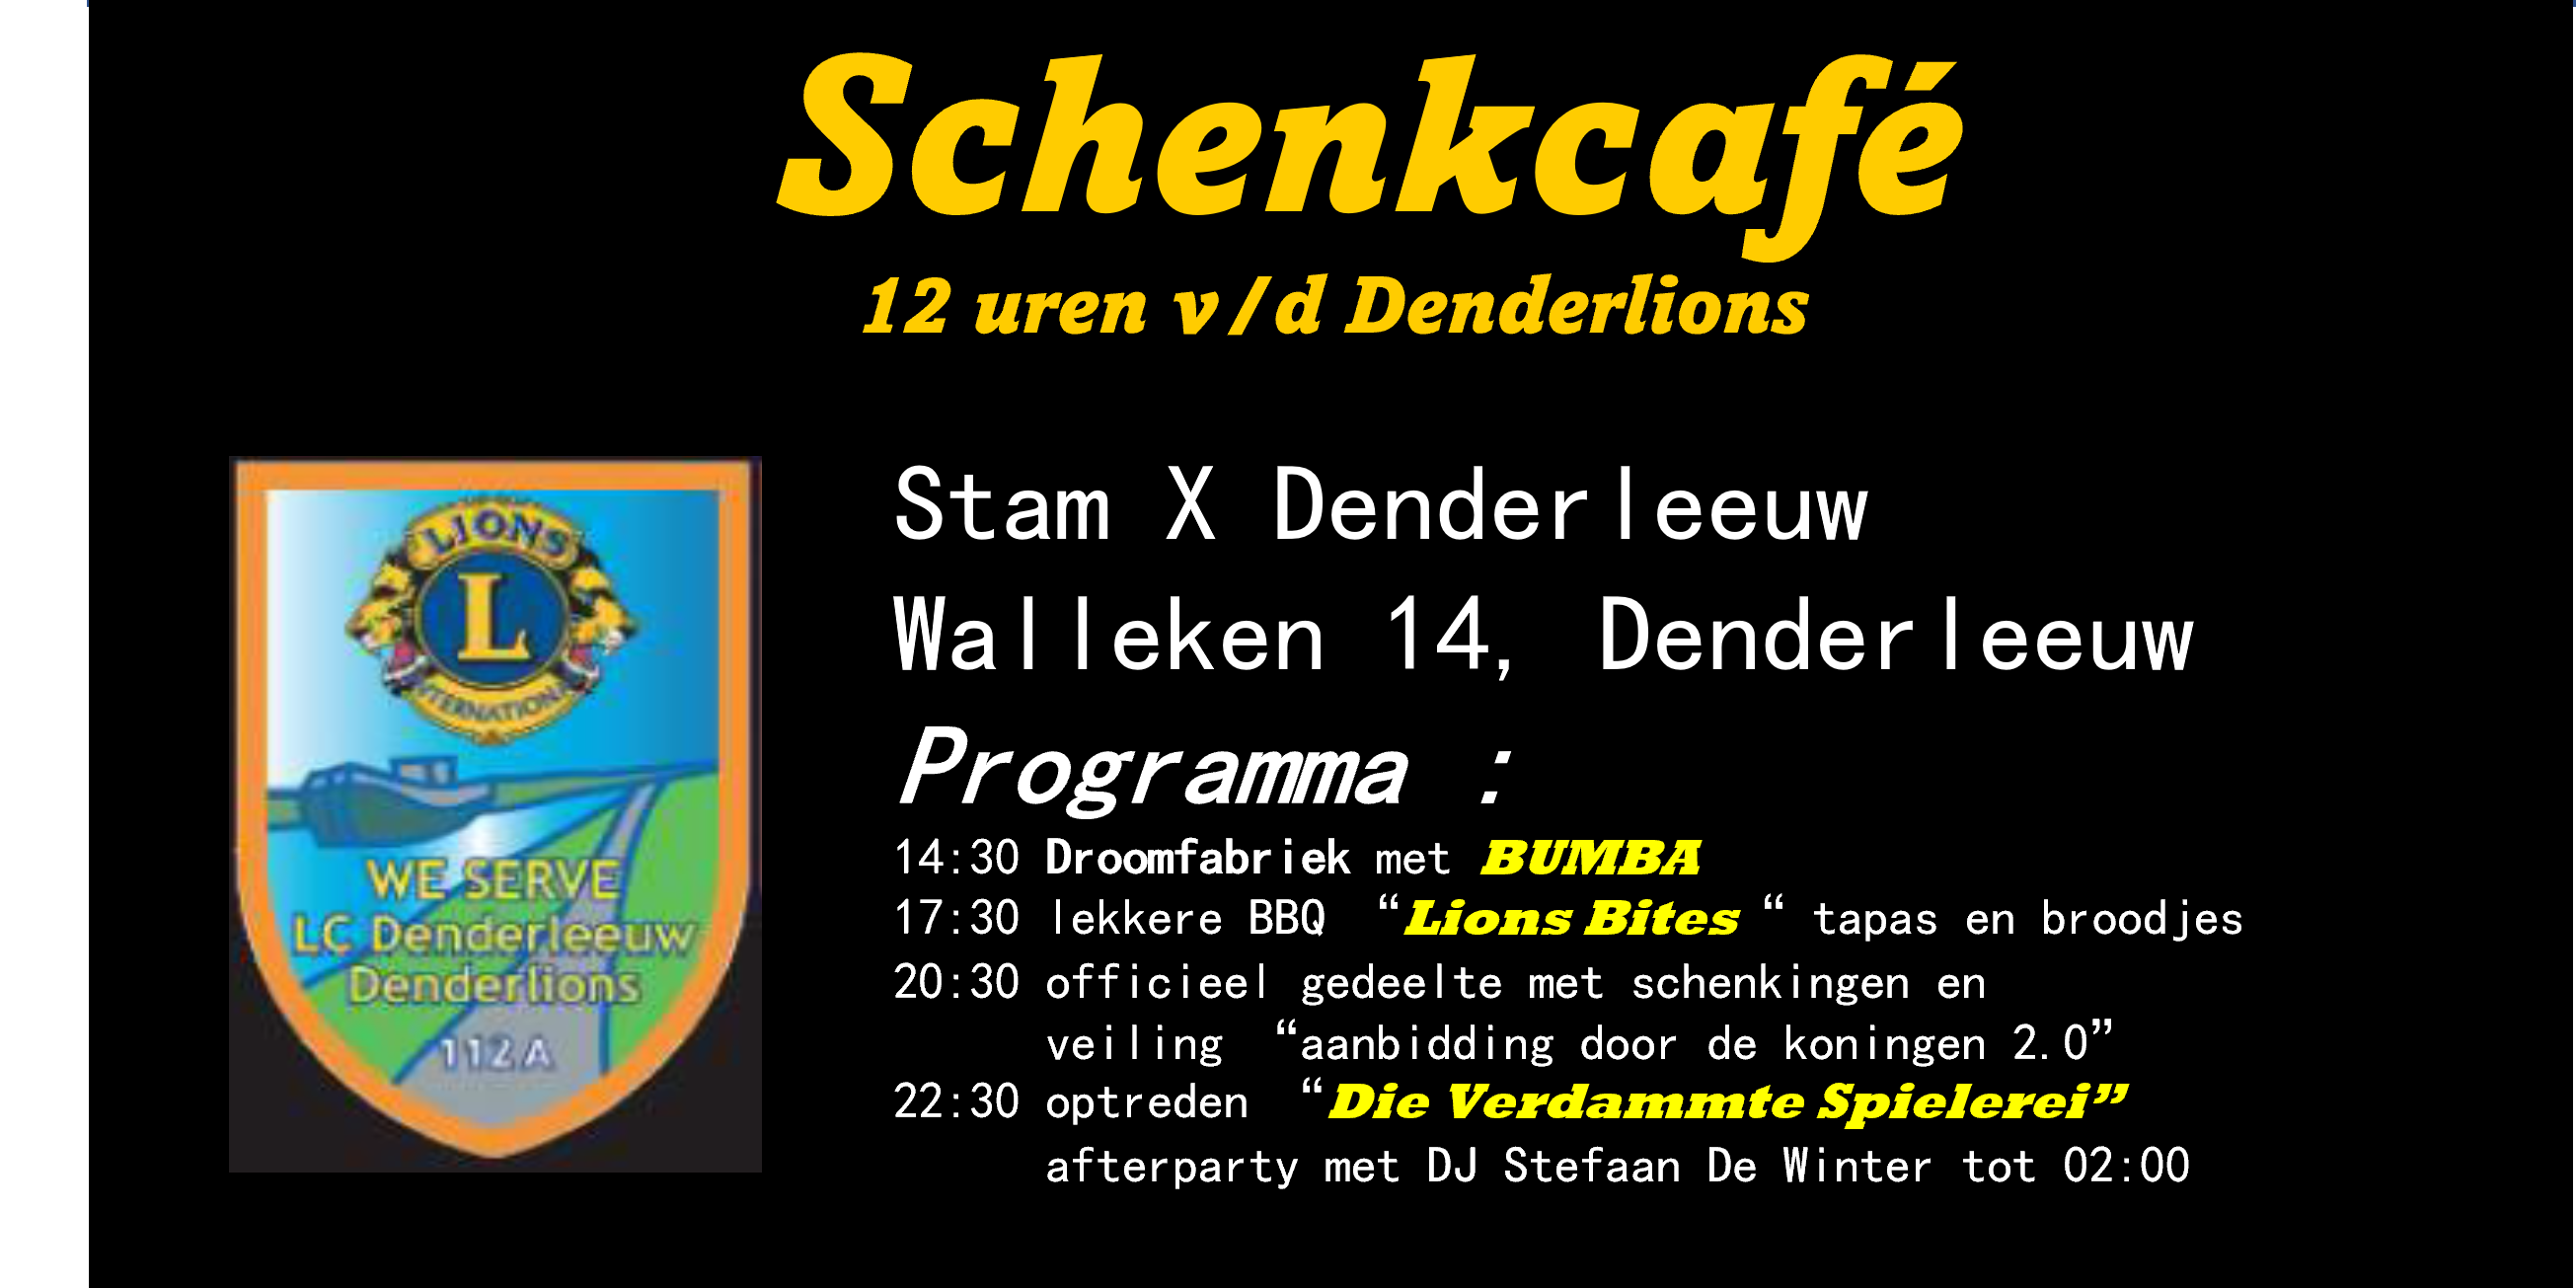 Schenkcafé Denderlions